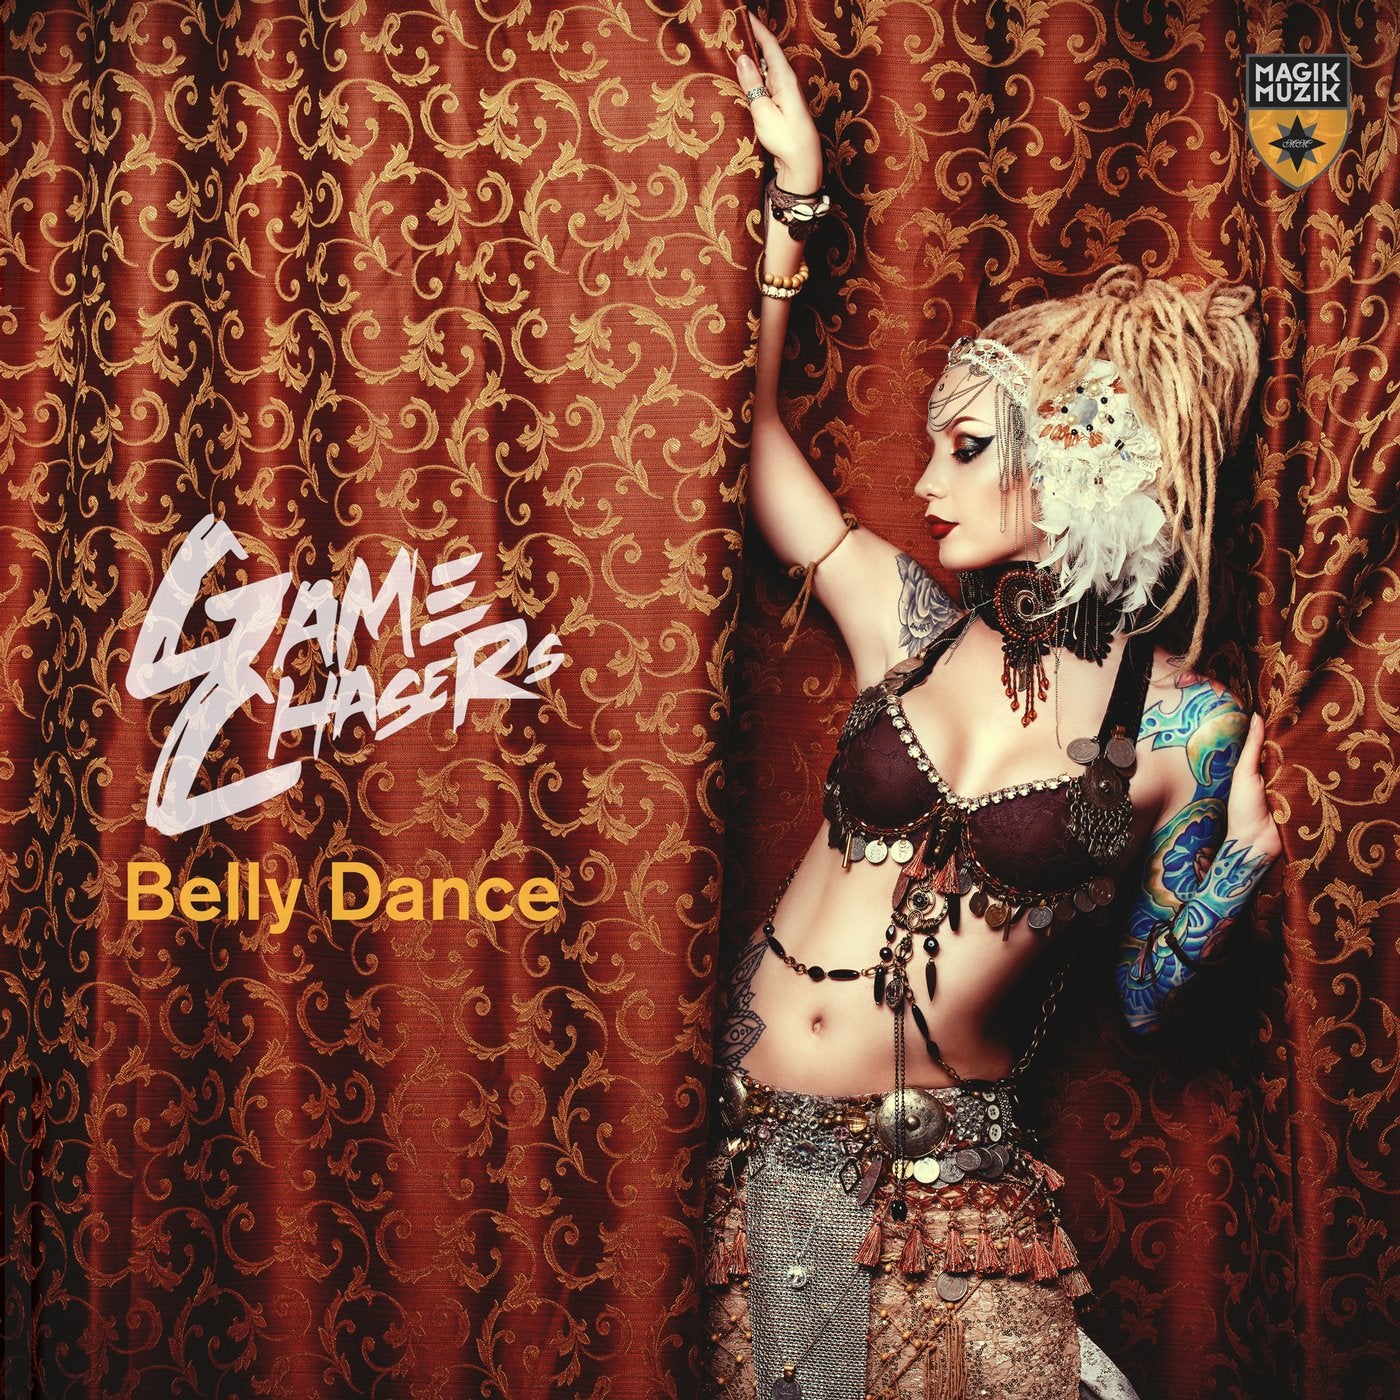 Erotic belly dance